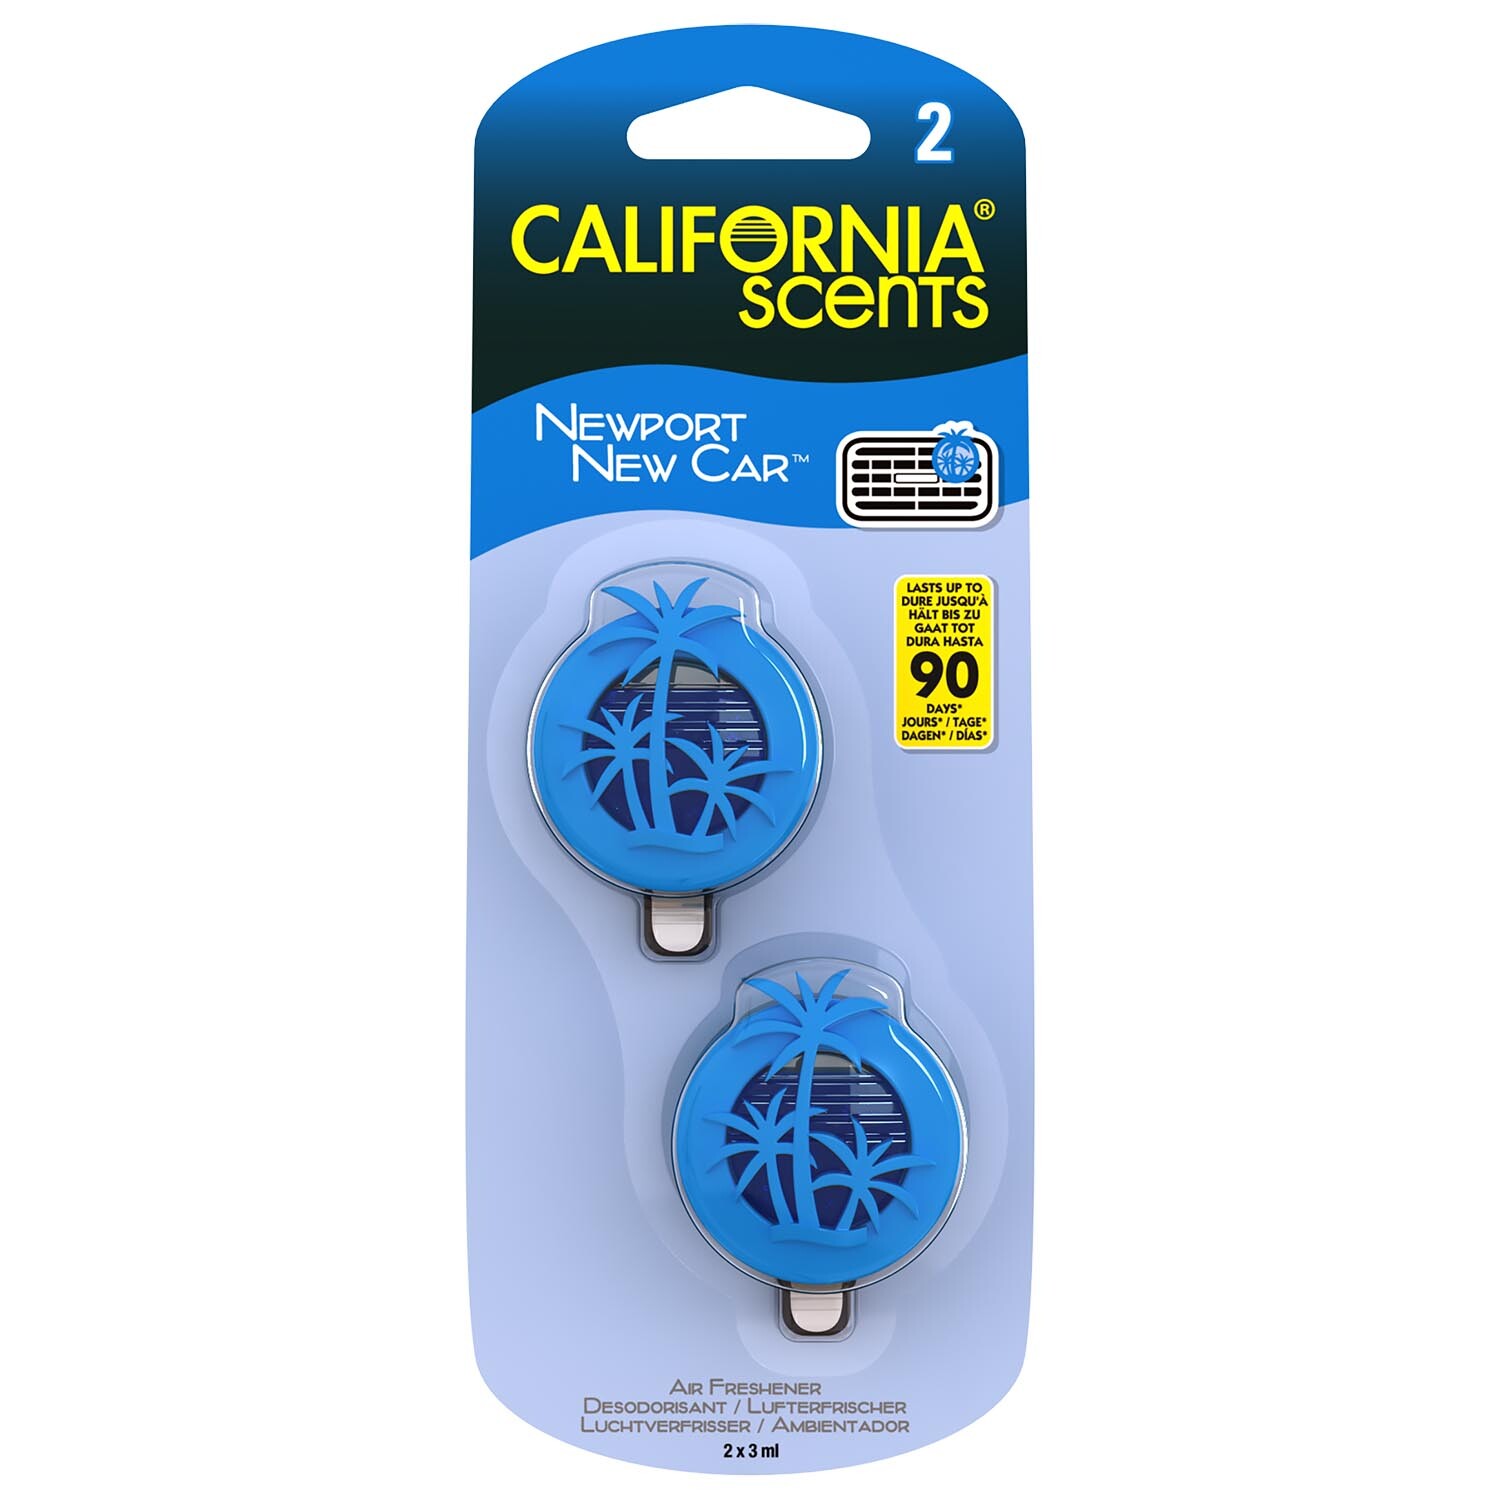 California Scents Mini Diffuser Car Air Freshener 2 Pack Image